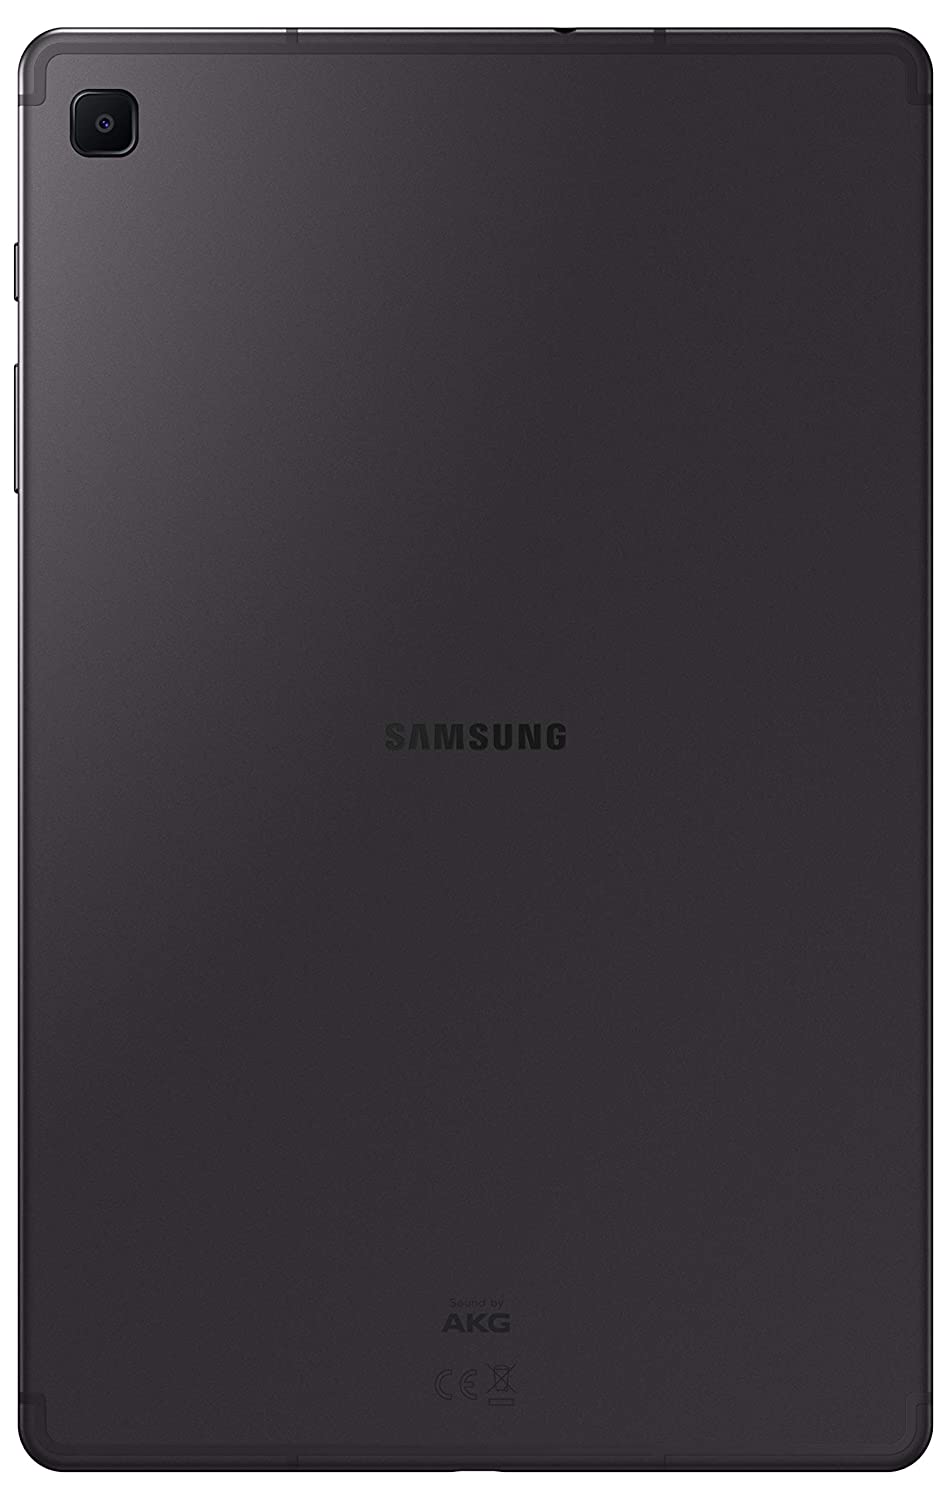 Samsung Galaxy Tab S6 Lite (128GB) (4GB RAM) WiFi – Let's Talk Deals!